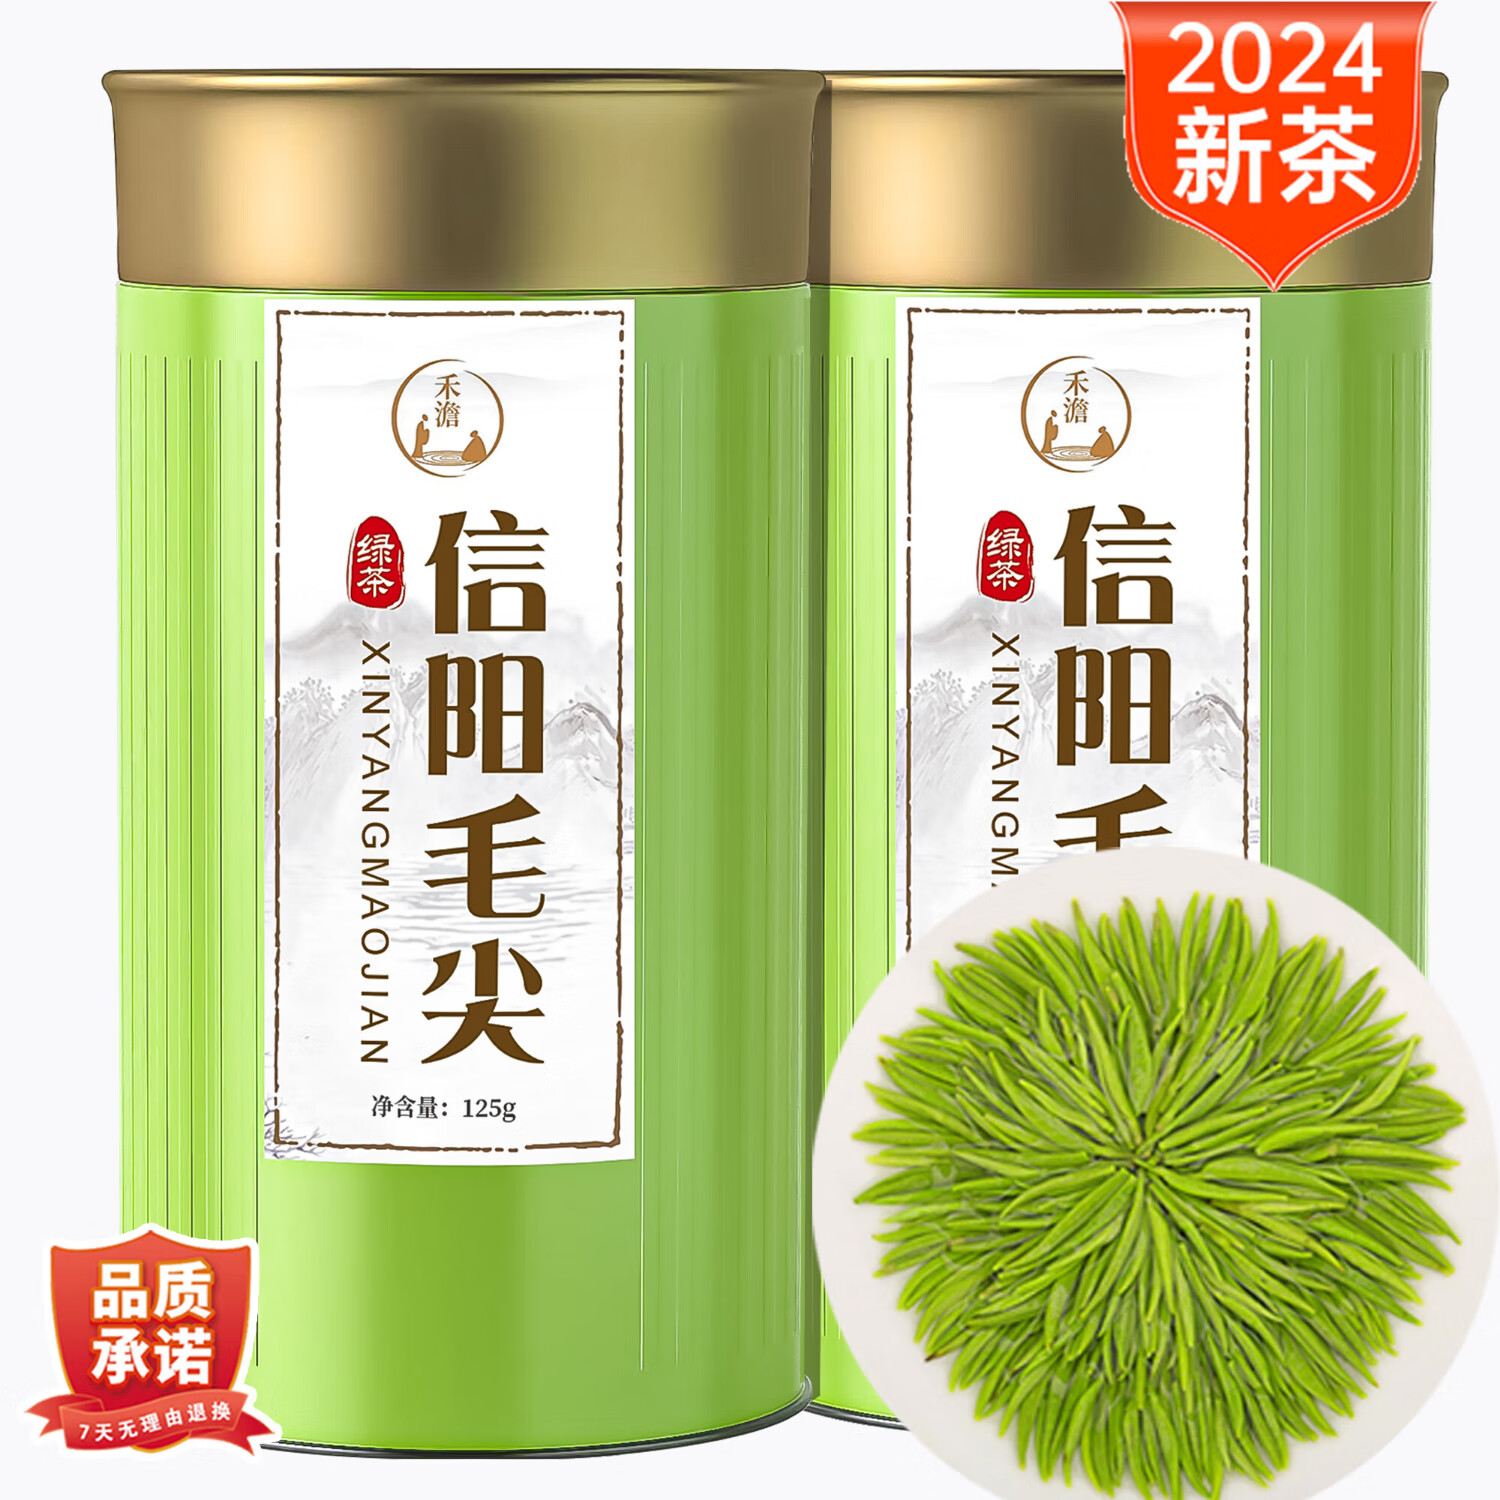 禾澹 信阳毛尖绿茶 一级茶叶 2罐【优质浓香耐泡】 32.9元